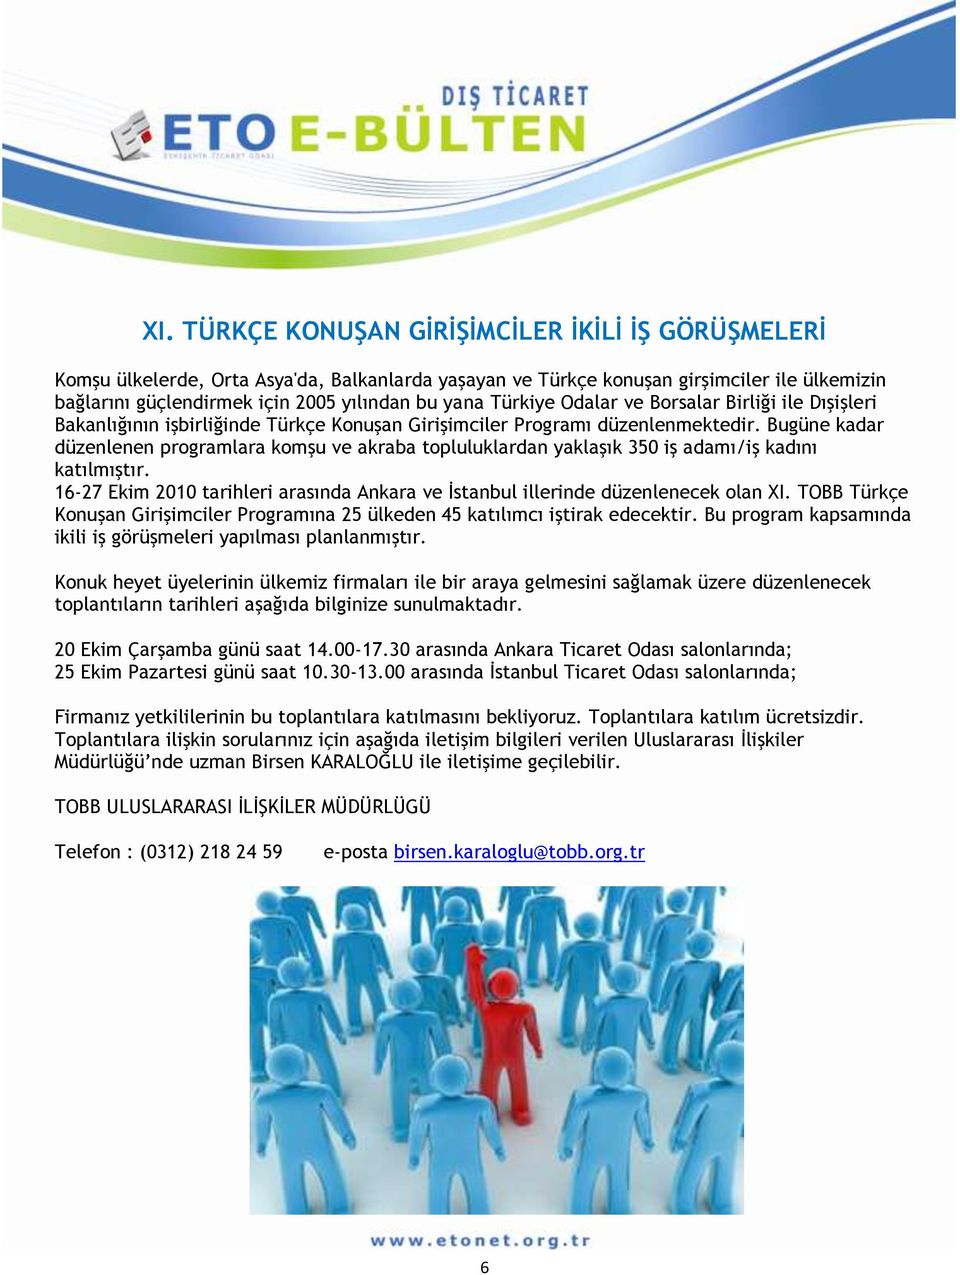 Bugüne kadar düzenlenen programlara komşu ve akraba topluluklardan yaklaşık 350 iş adamı/iş kadını katılmıştır. 16-27 Ekim 2010 tarihleri arasında Ankara ve İstanbul illerinde düzenlenecek olan XI.